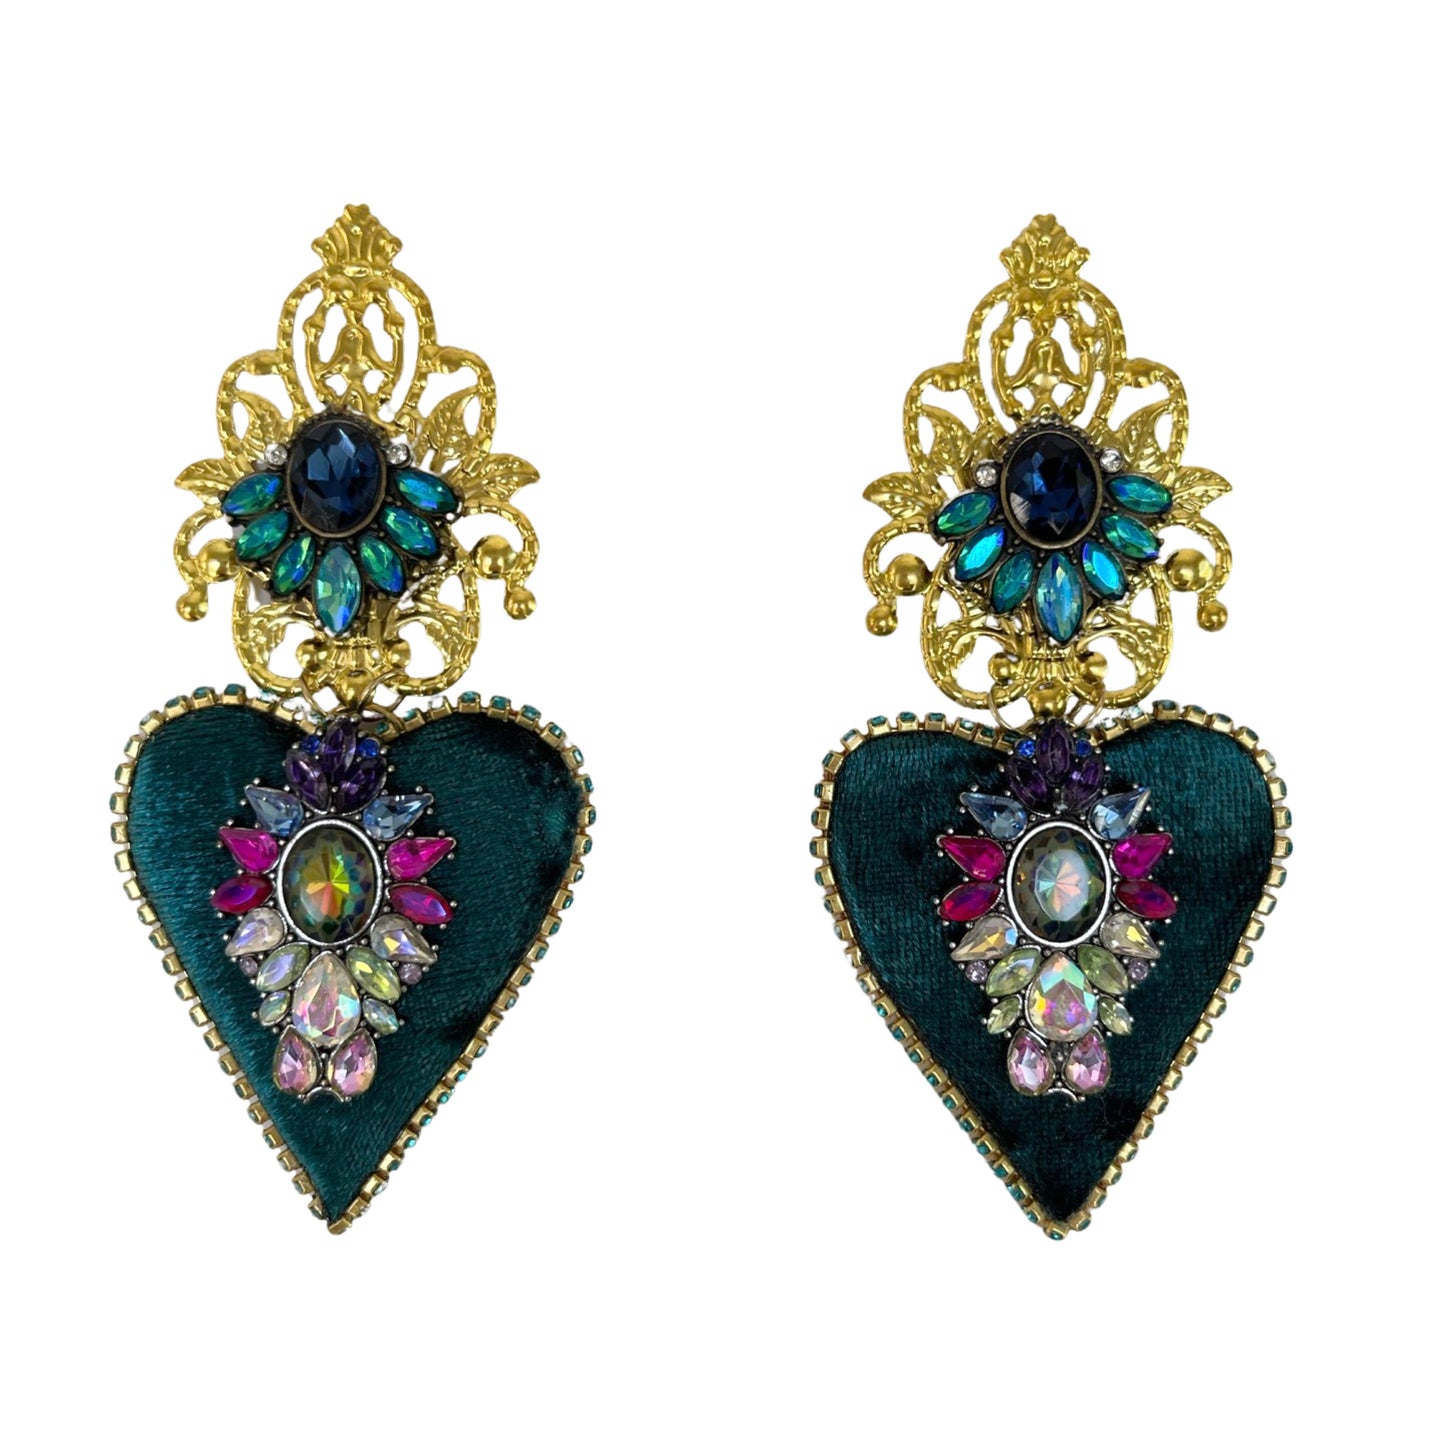 04.Elegant green heart earrings